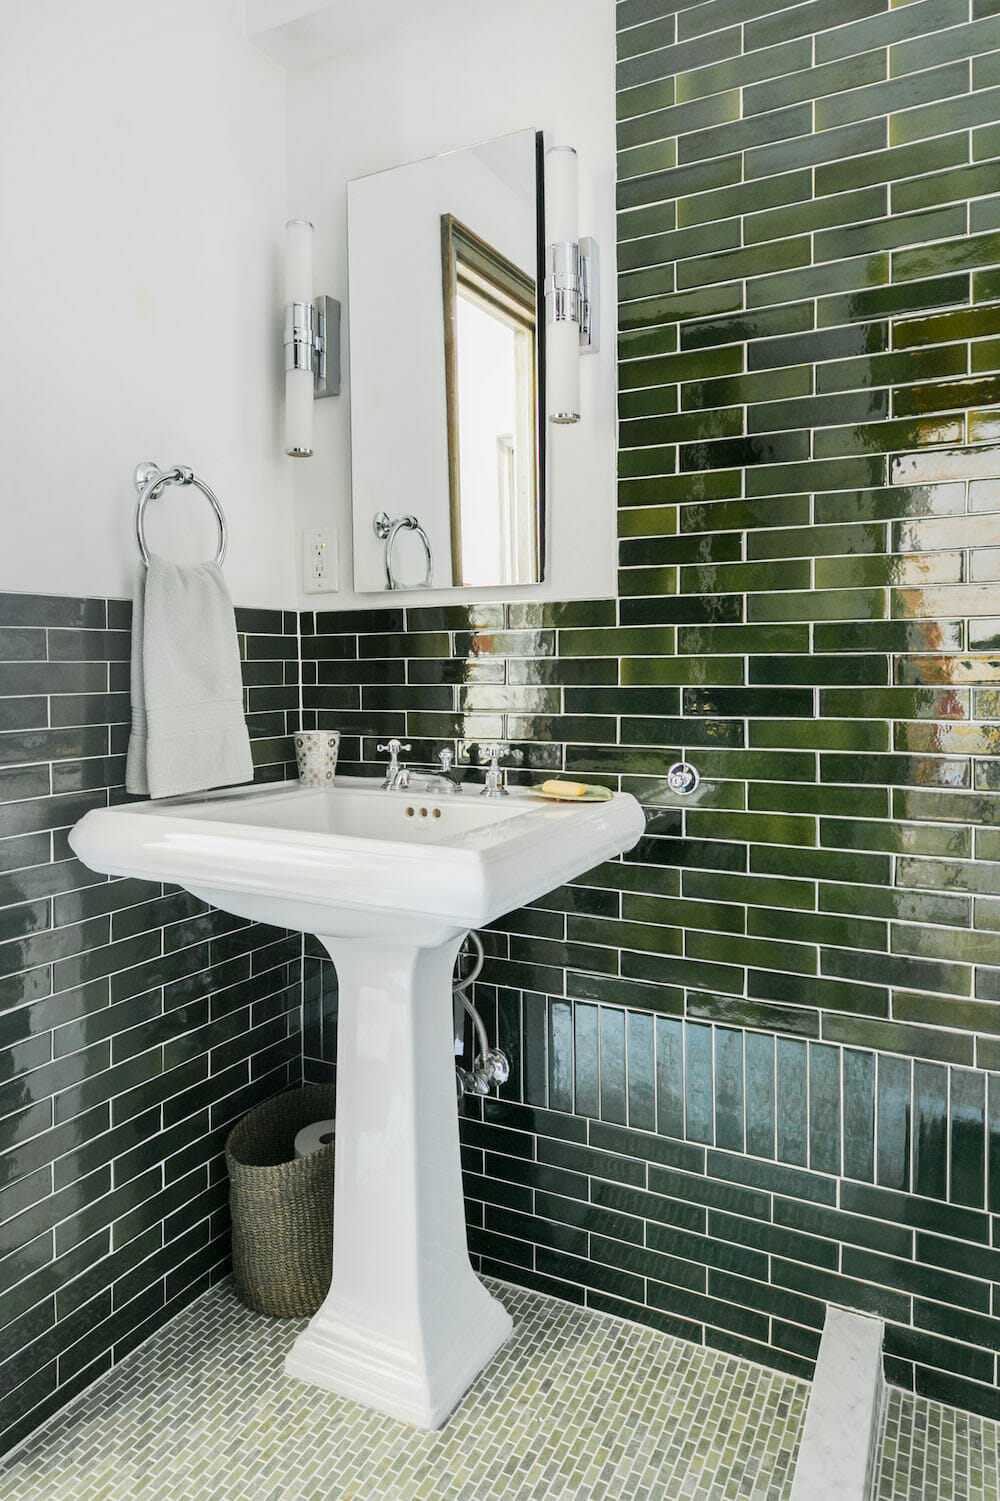 Gramercy Park bathroom, bathroom renovation, tile, glass divider, tile floor, tile wall, pedestal sink